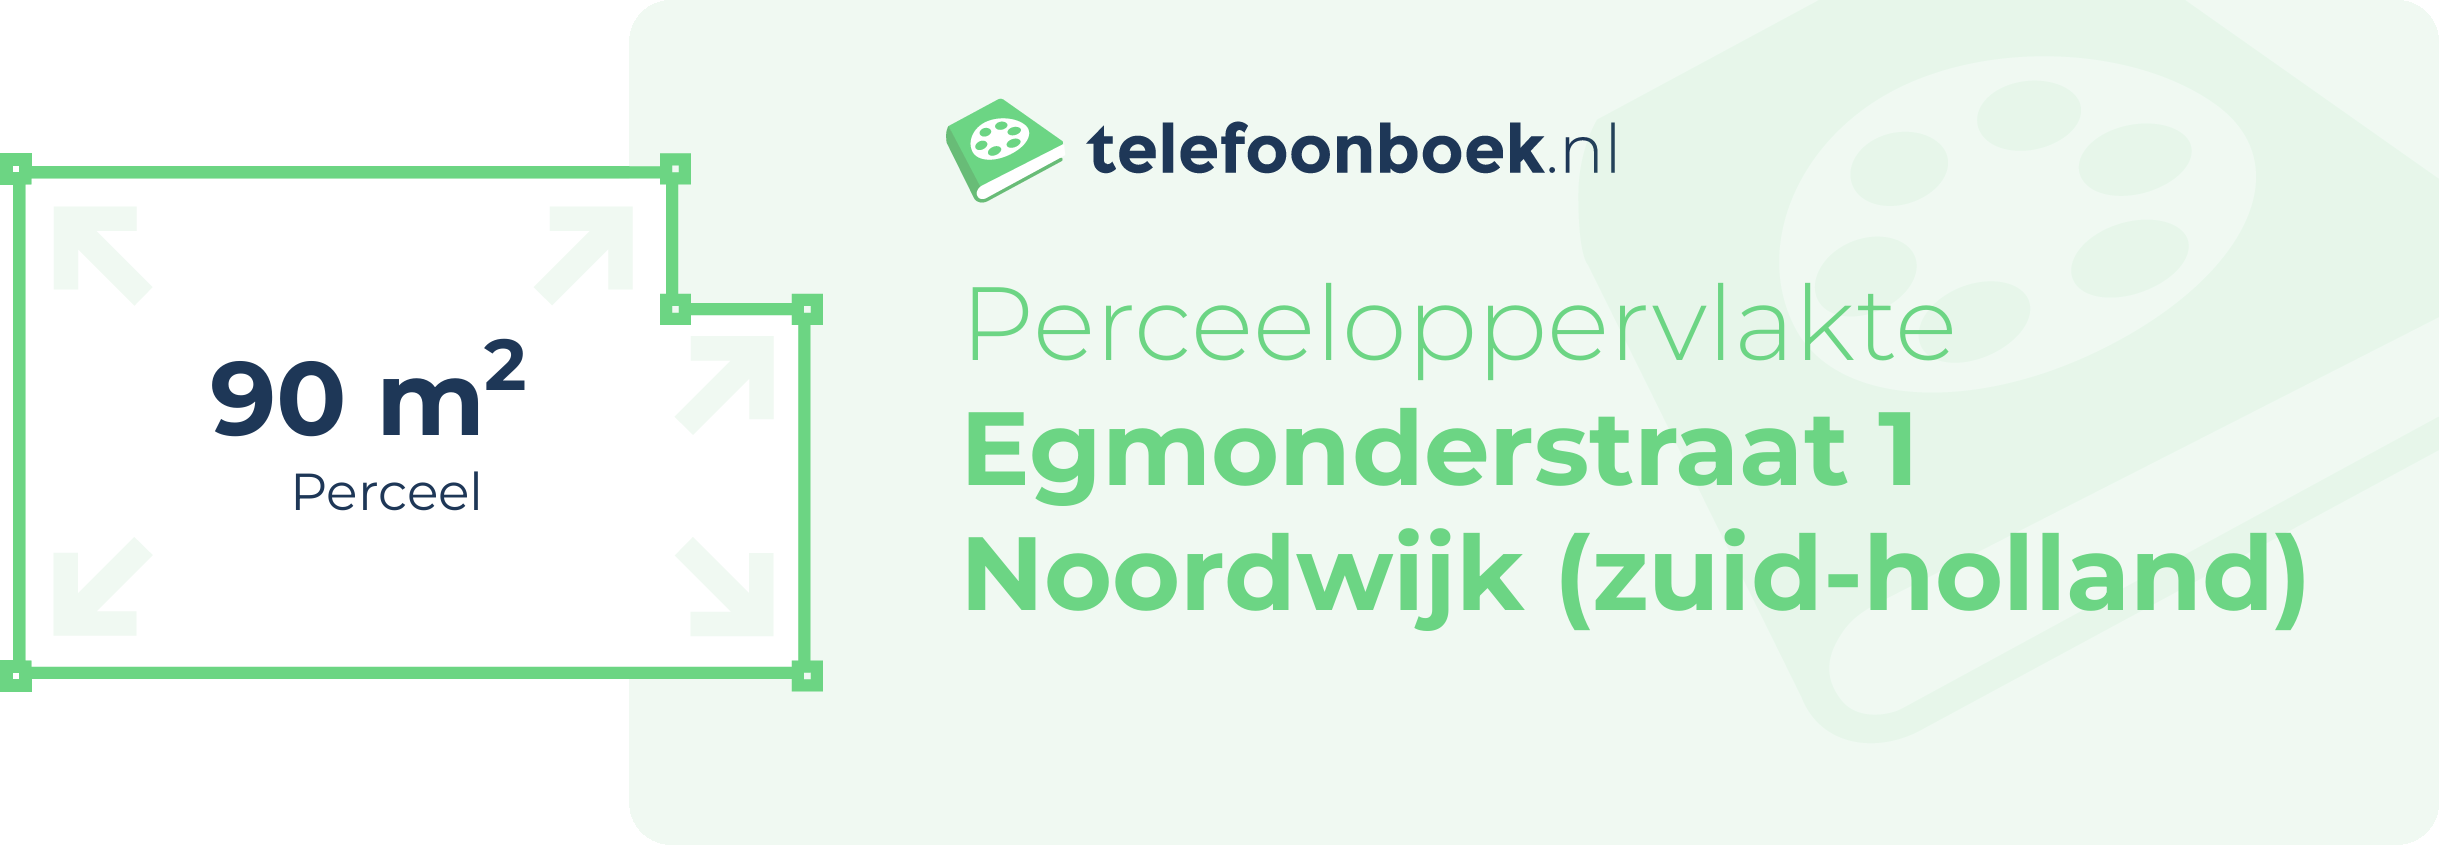 Perceeloppervlakte Egmonderstraat 1 Noordwijk (Zuid-Holland)